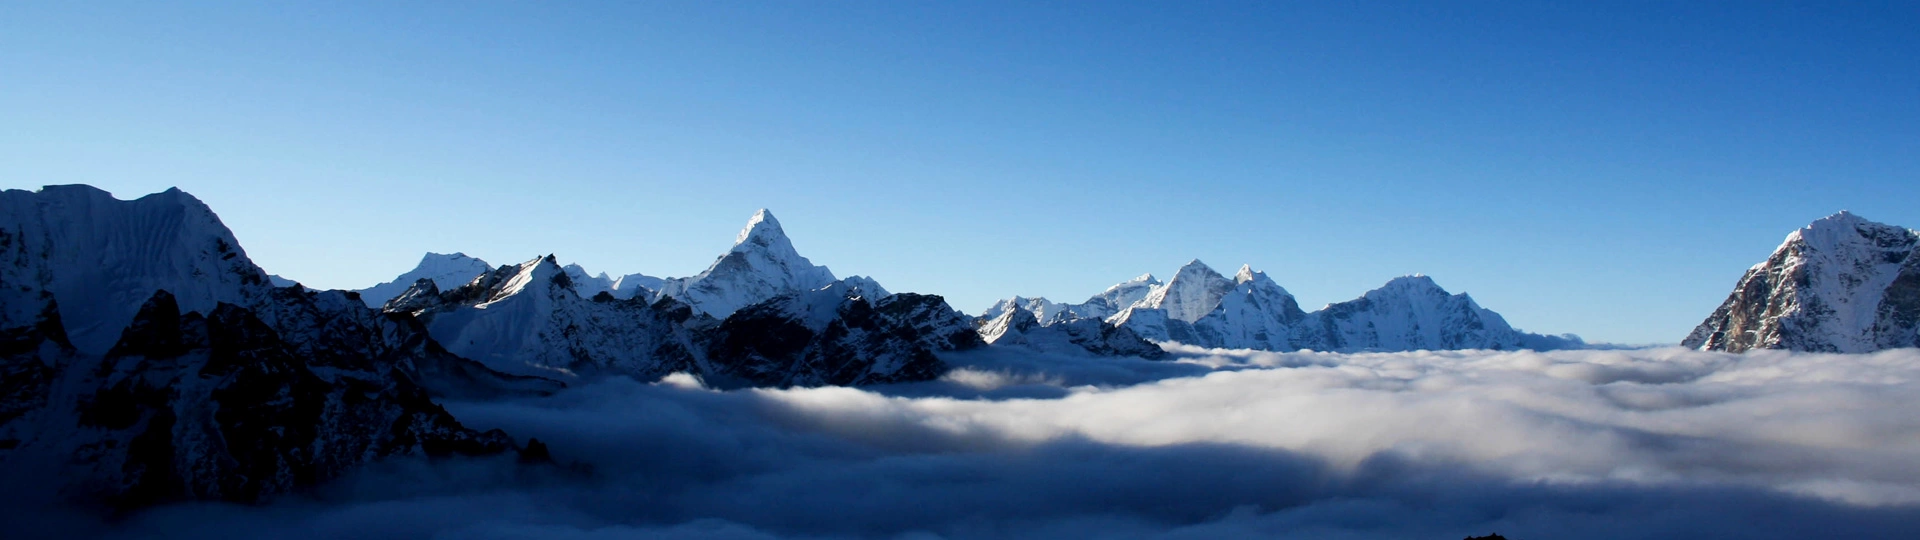 Everest Base Camp Trek Beginners Guide